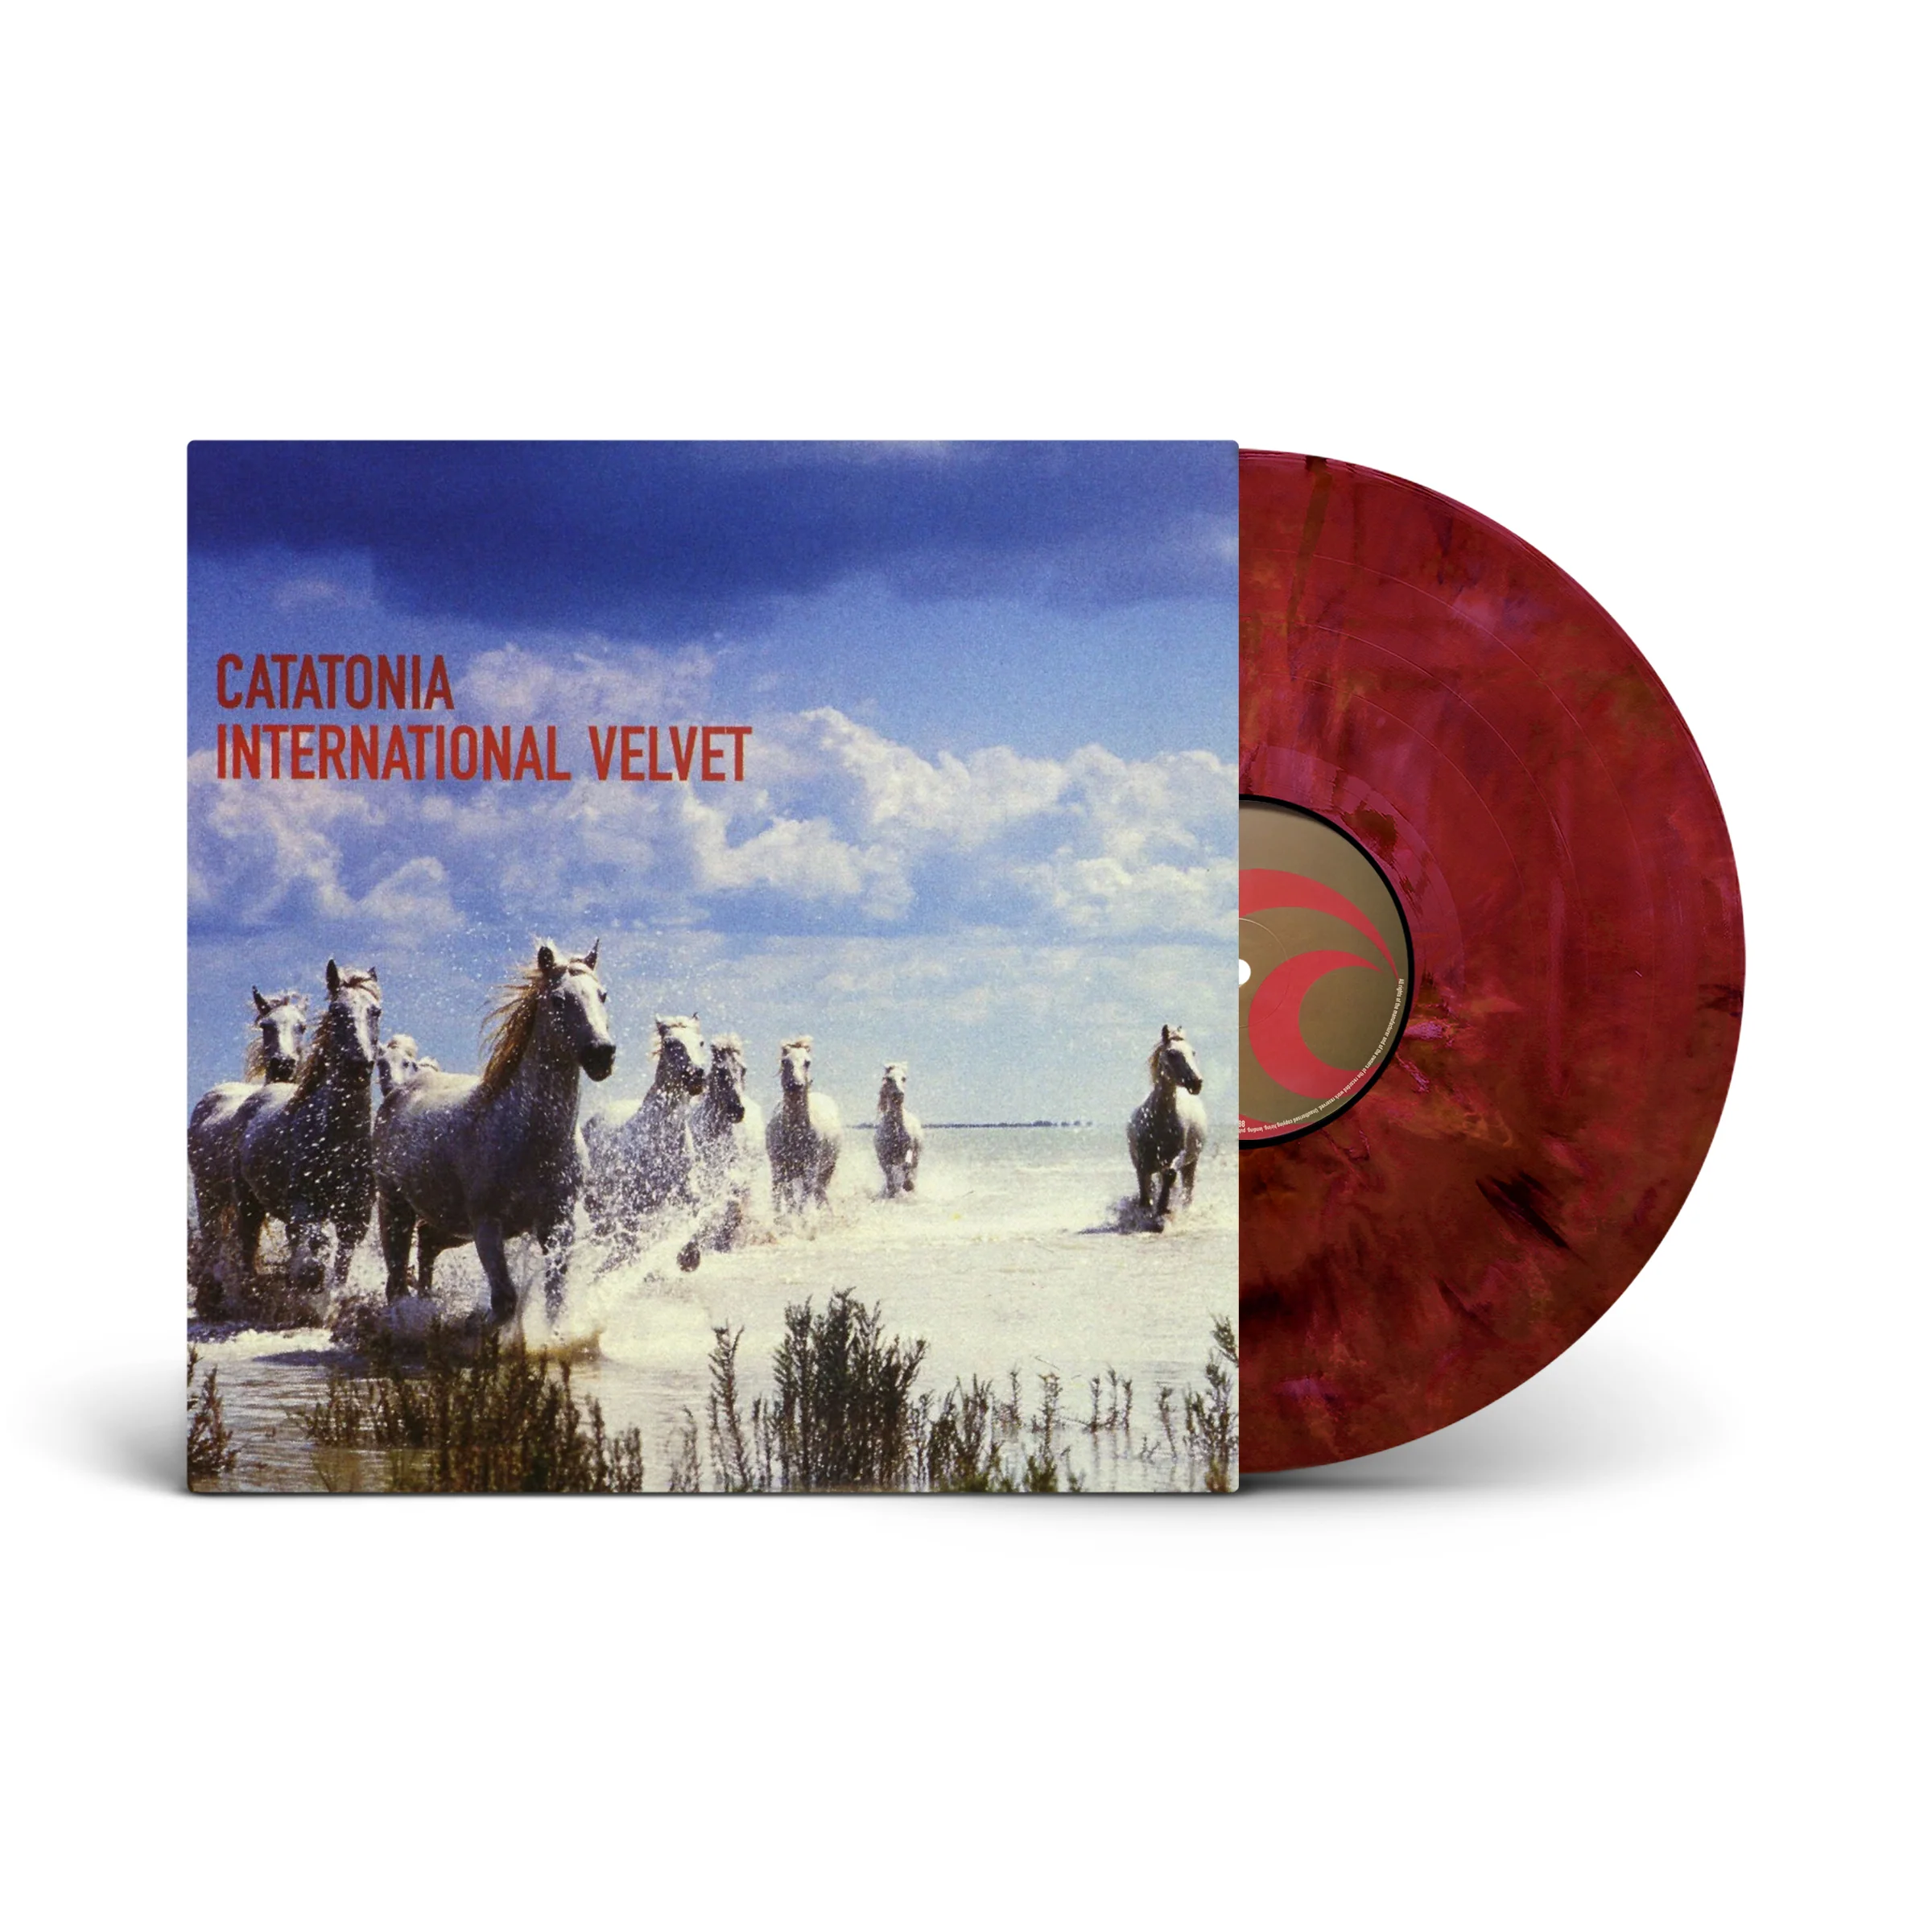 Catatonia "International Velvet" Recycle LP